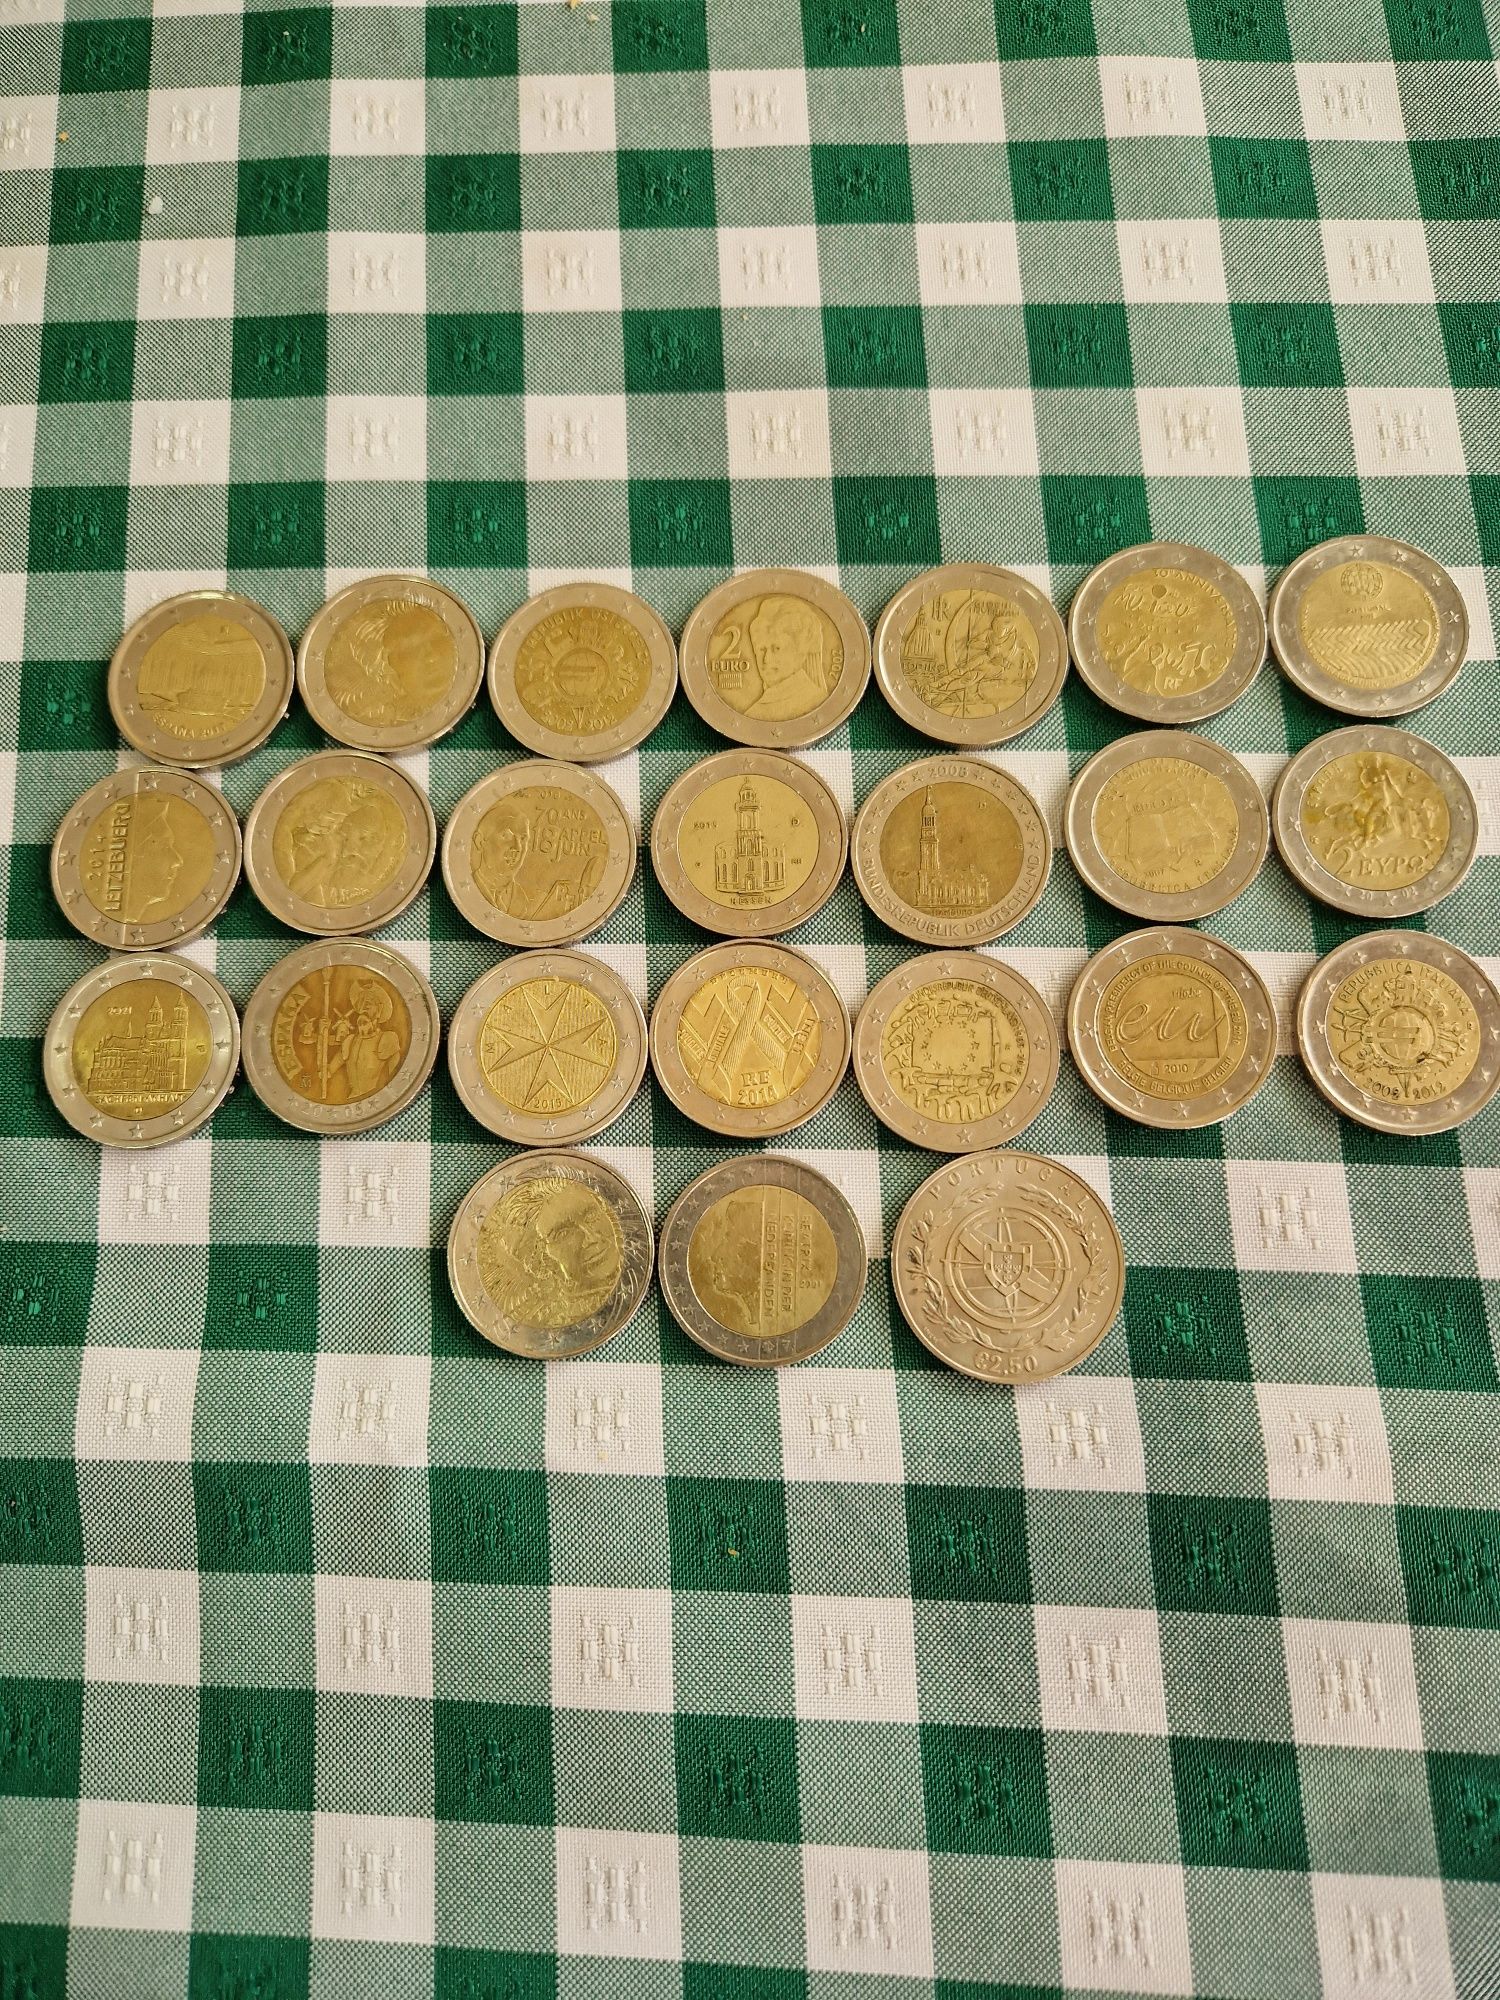 Moedas raras de 2 euros